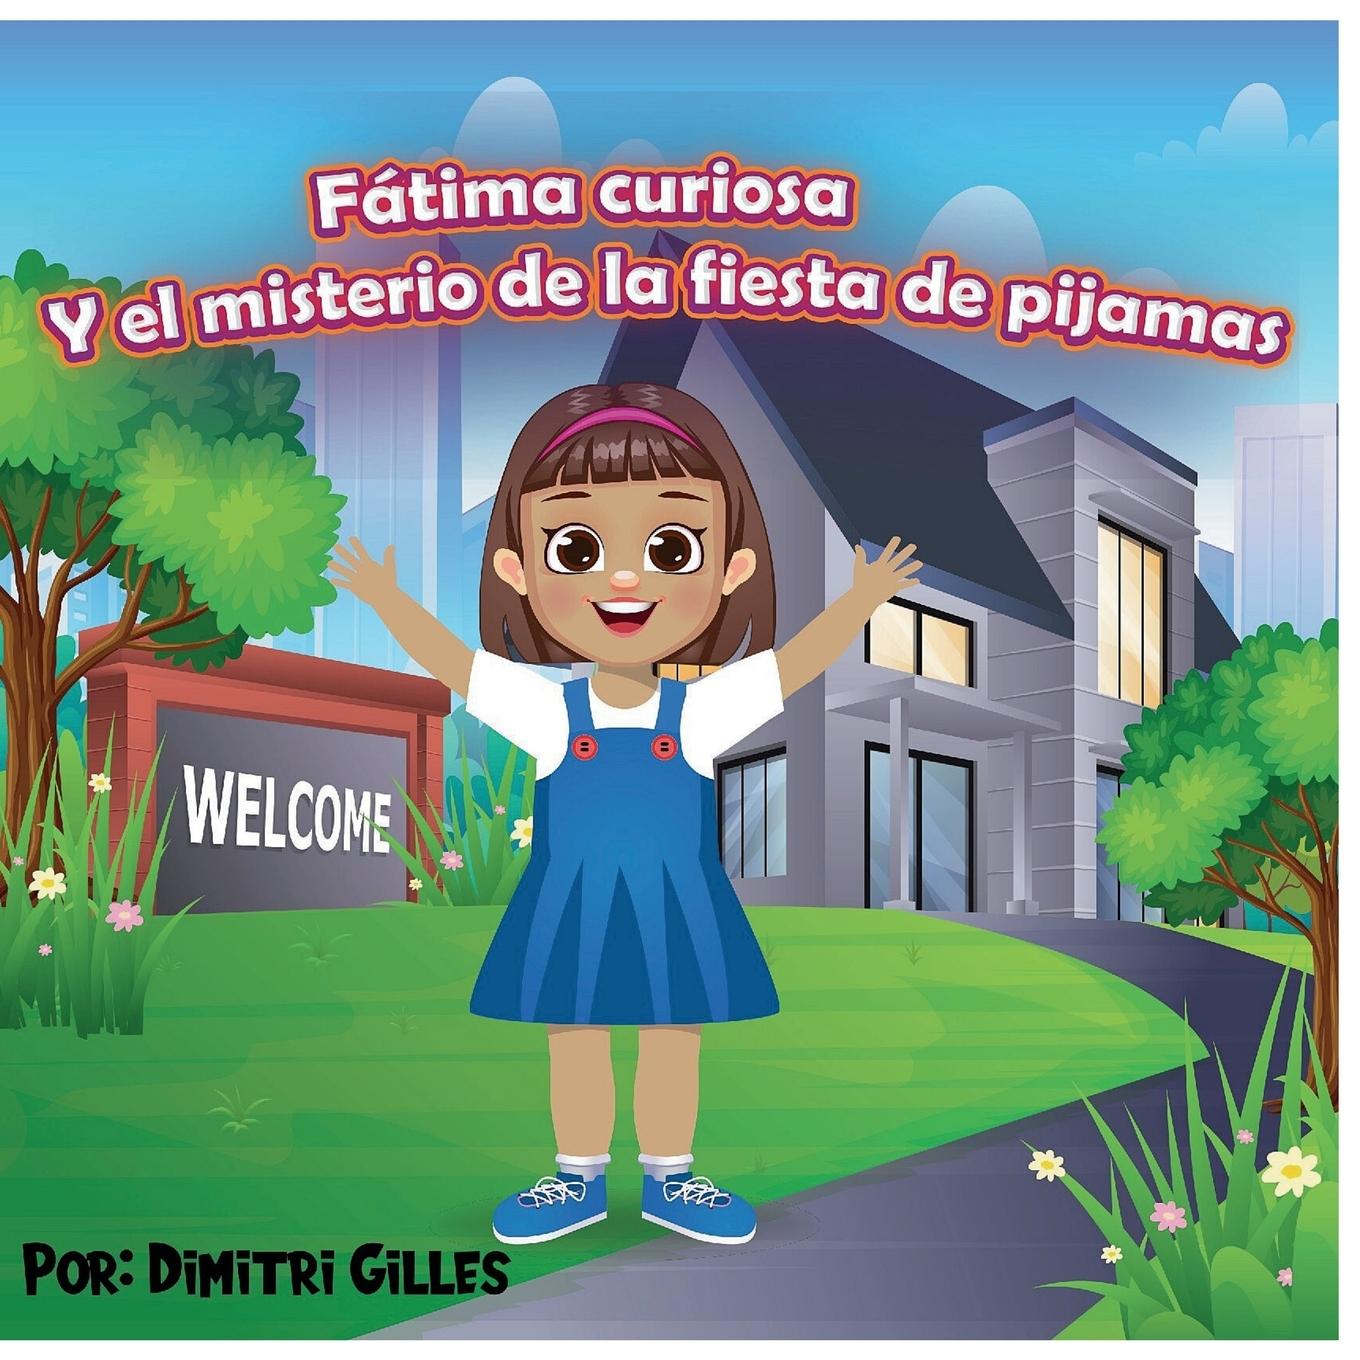 Book Fatima Curiosa Y El Misterio de la fiesta de pijamas 